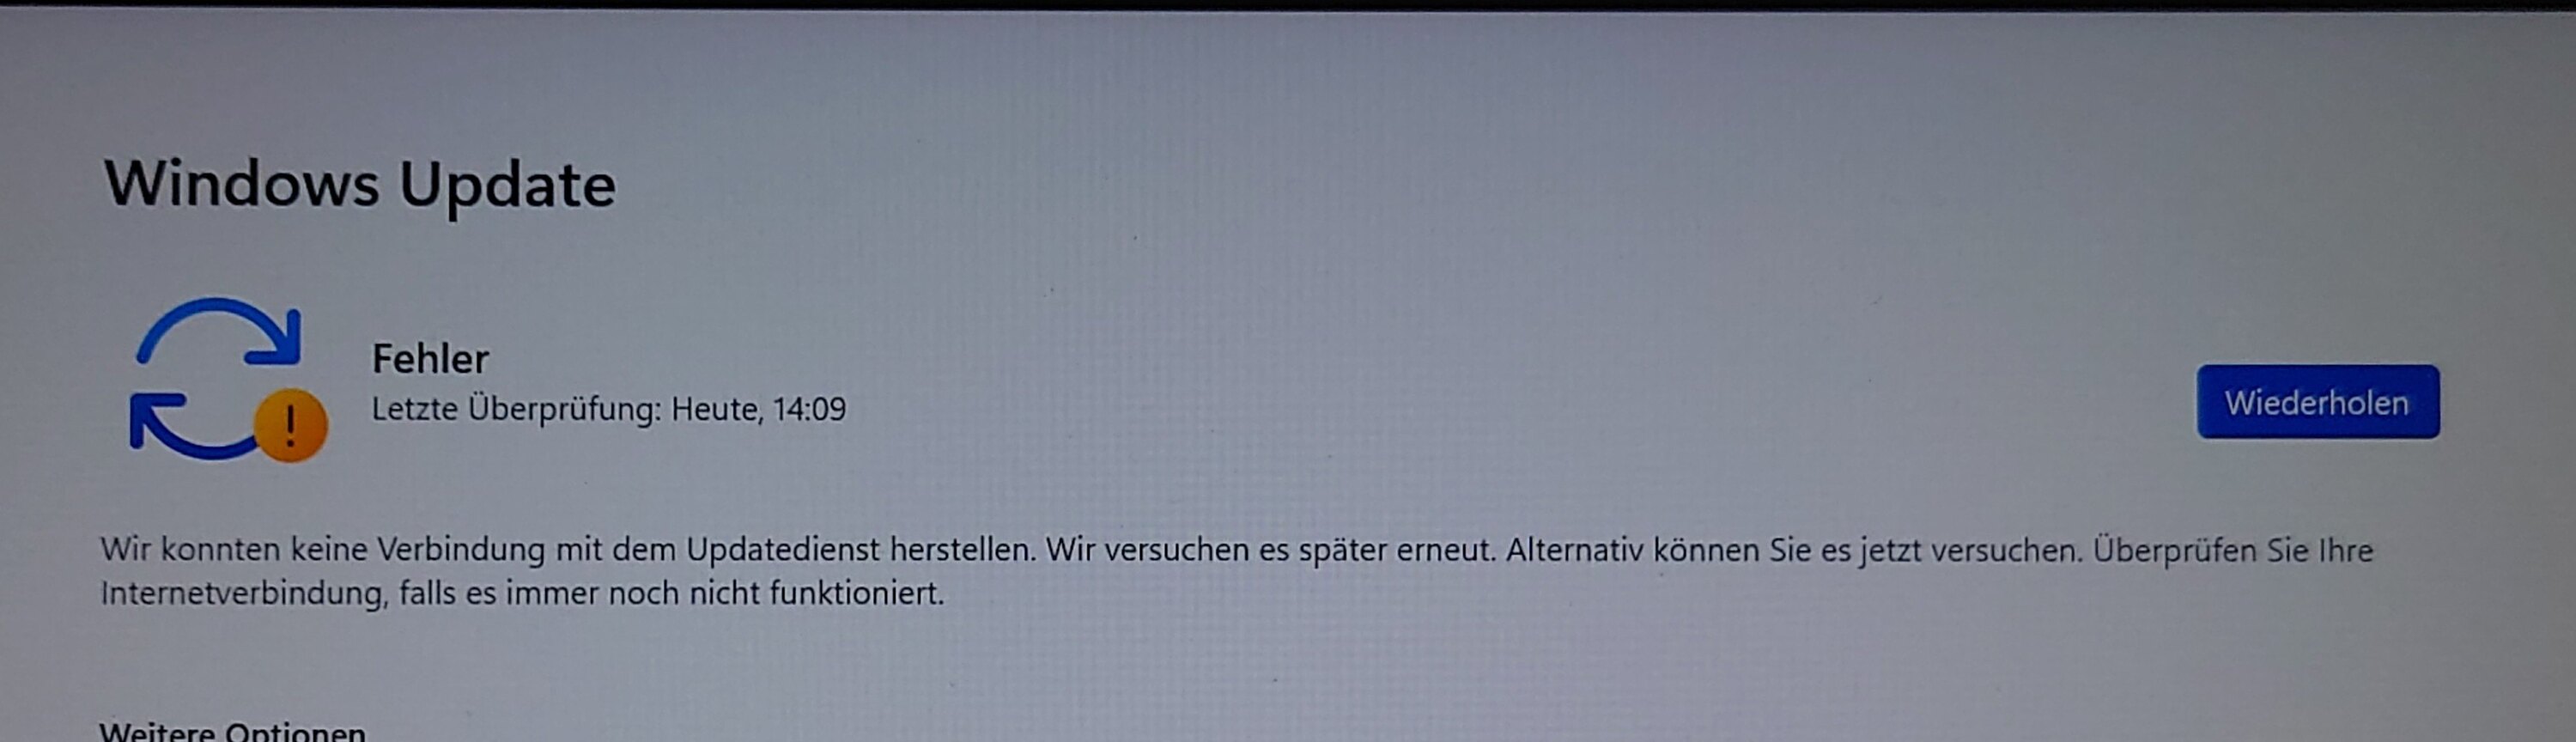 Windows Updates und Store haben keine Verbindung